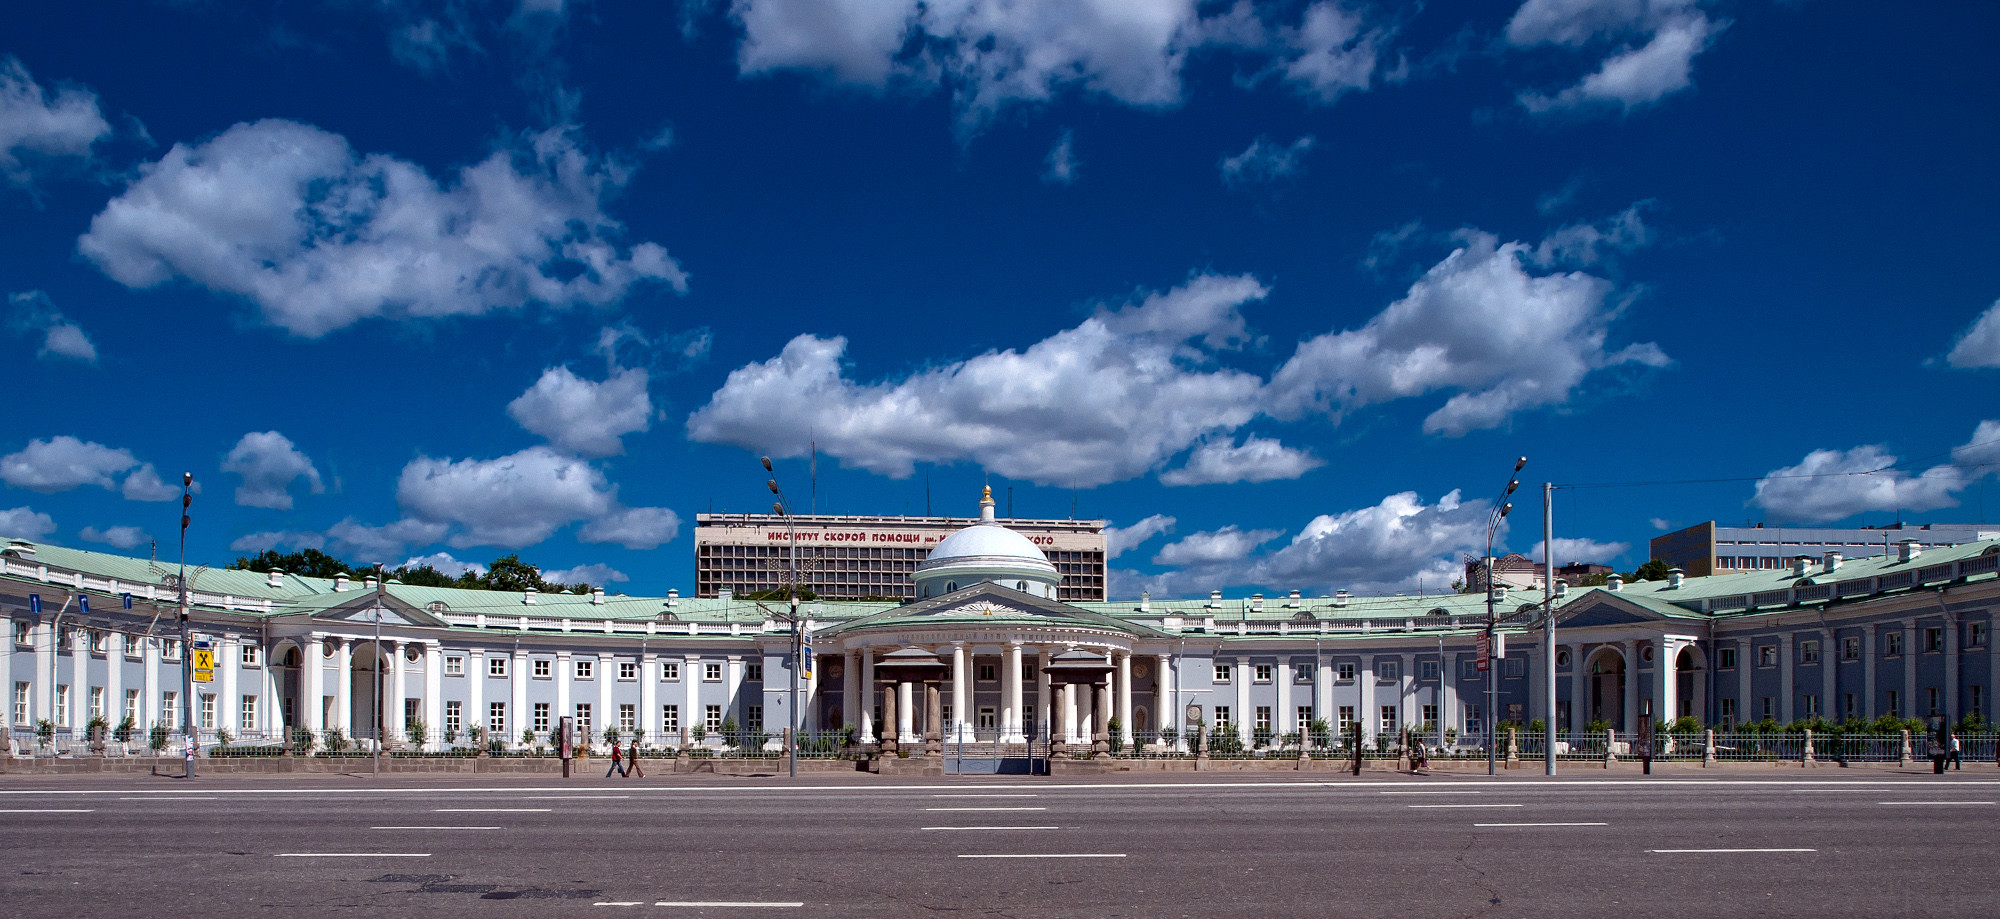 институт склифосовского в москве